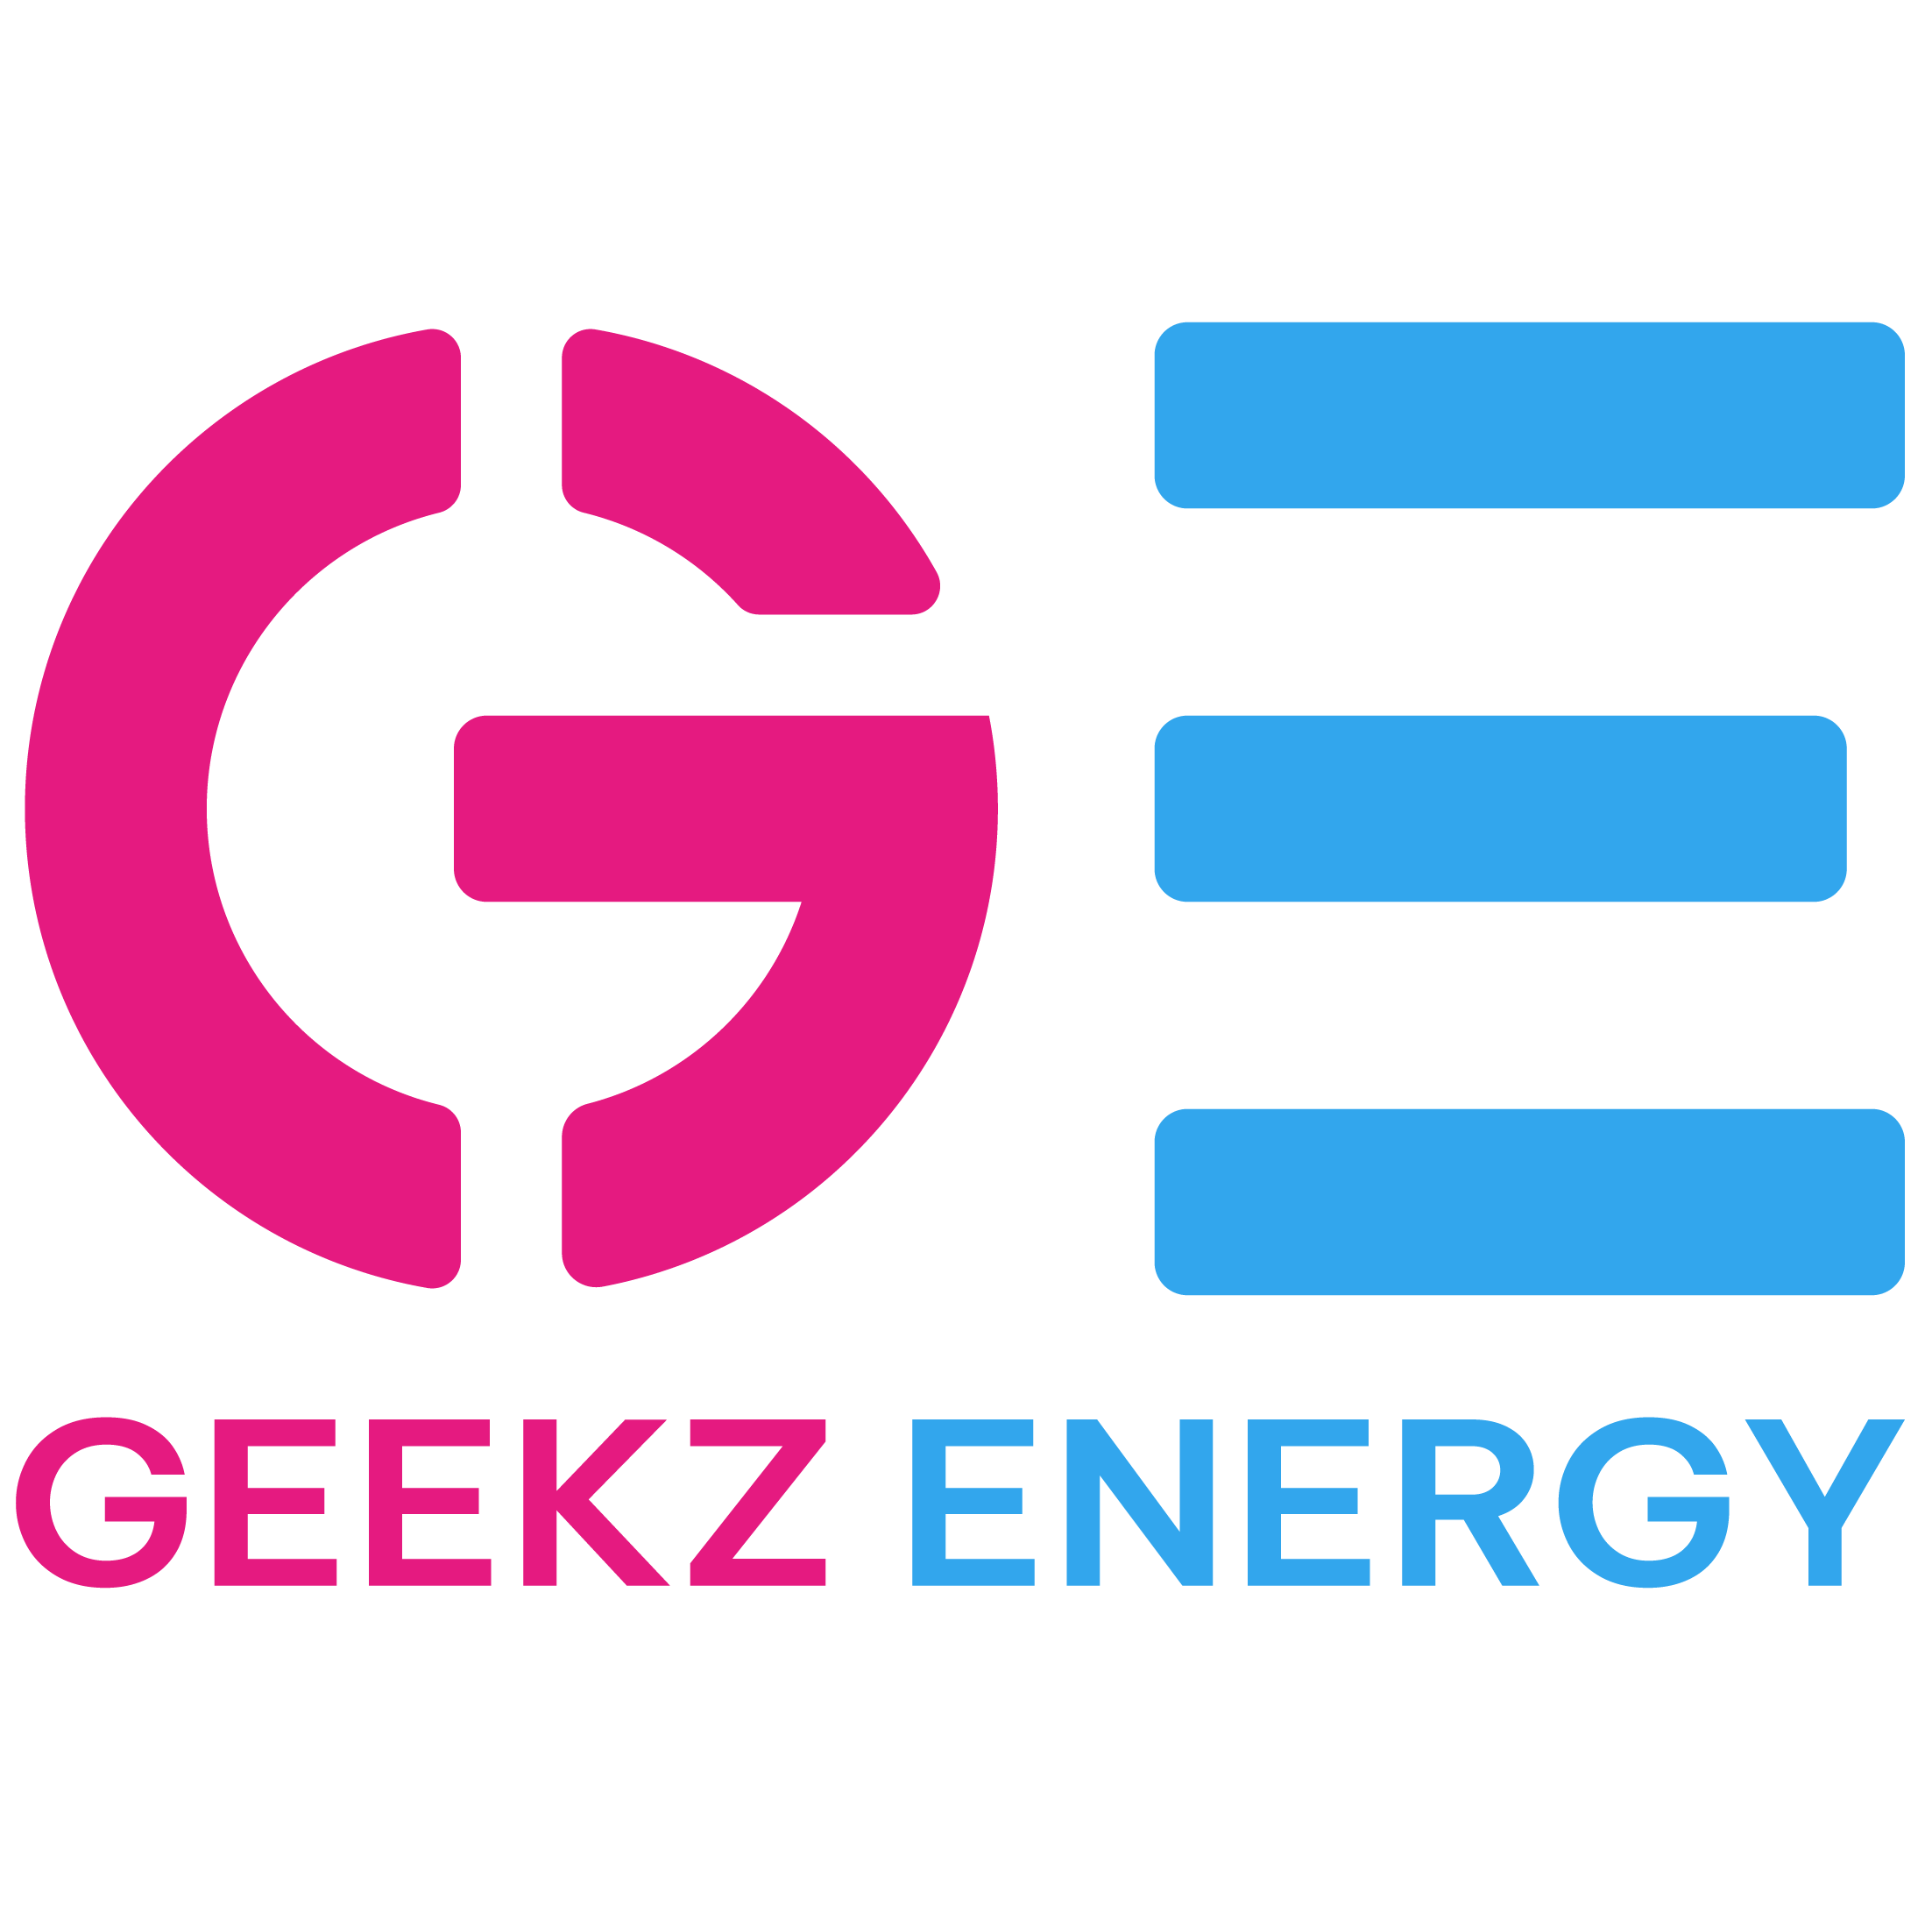 GEEKZ ENERGY YOUNG